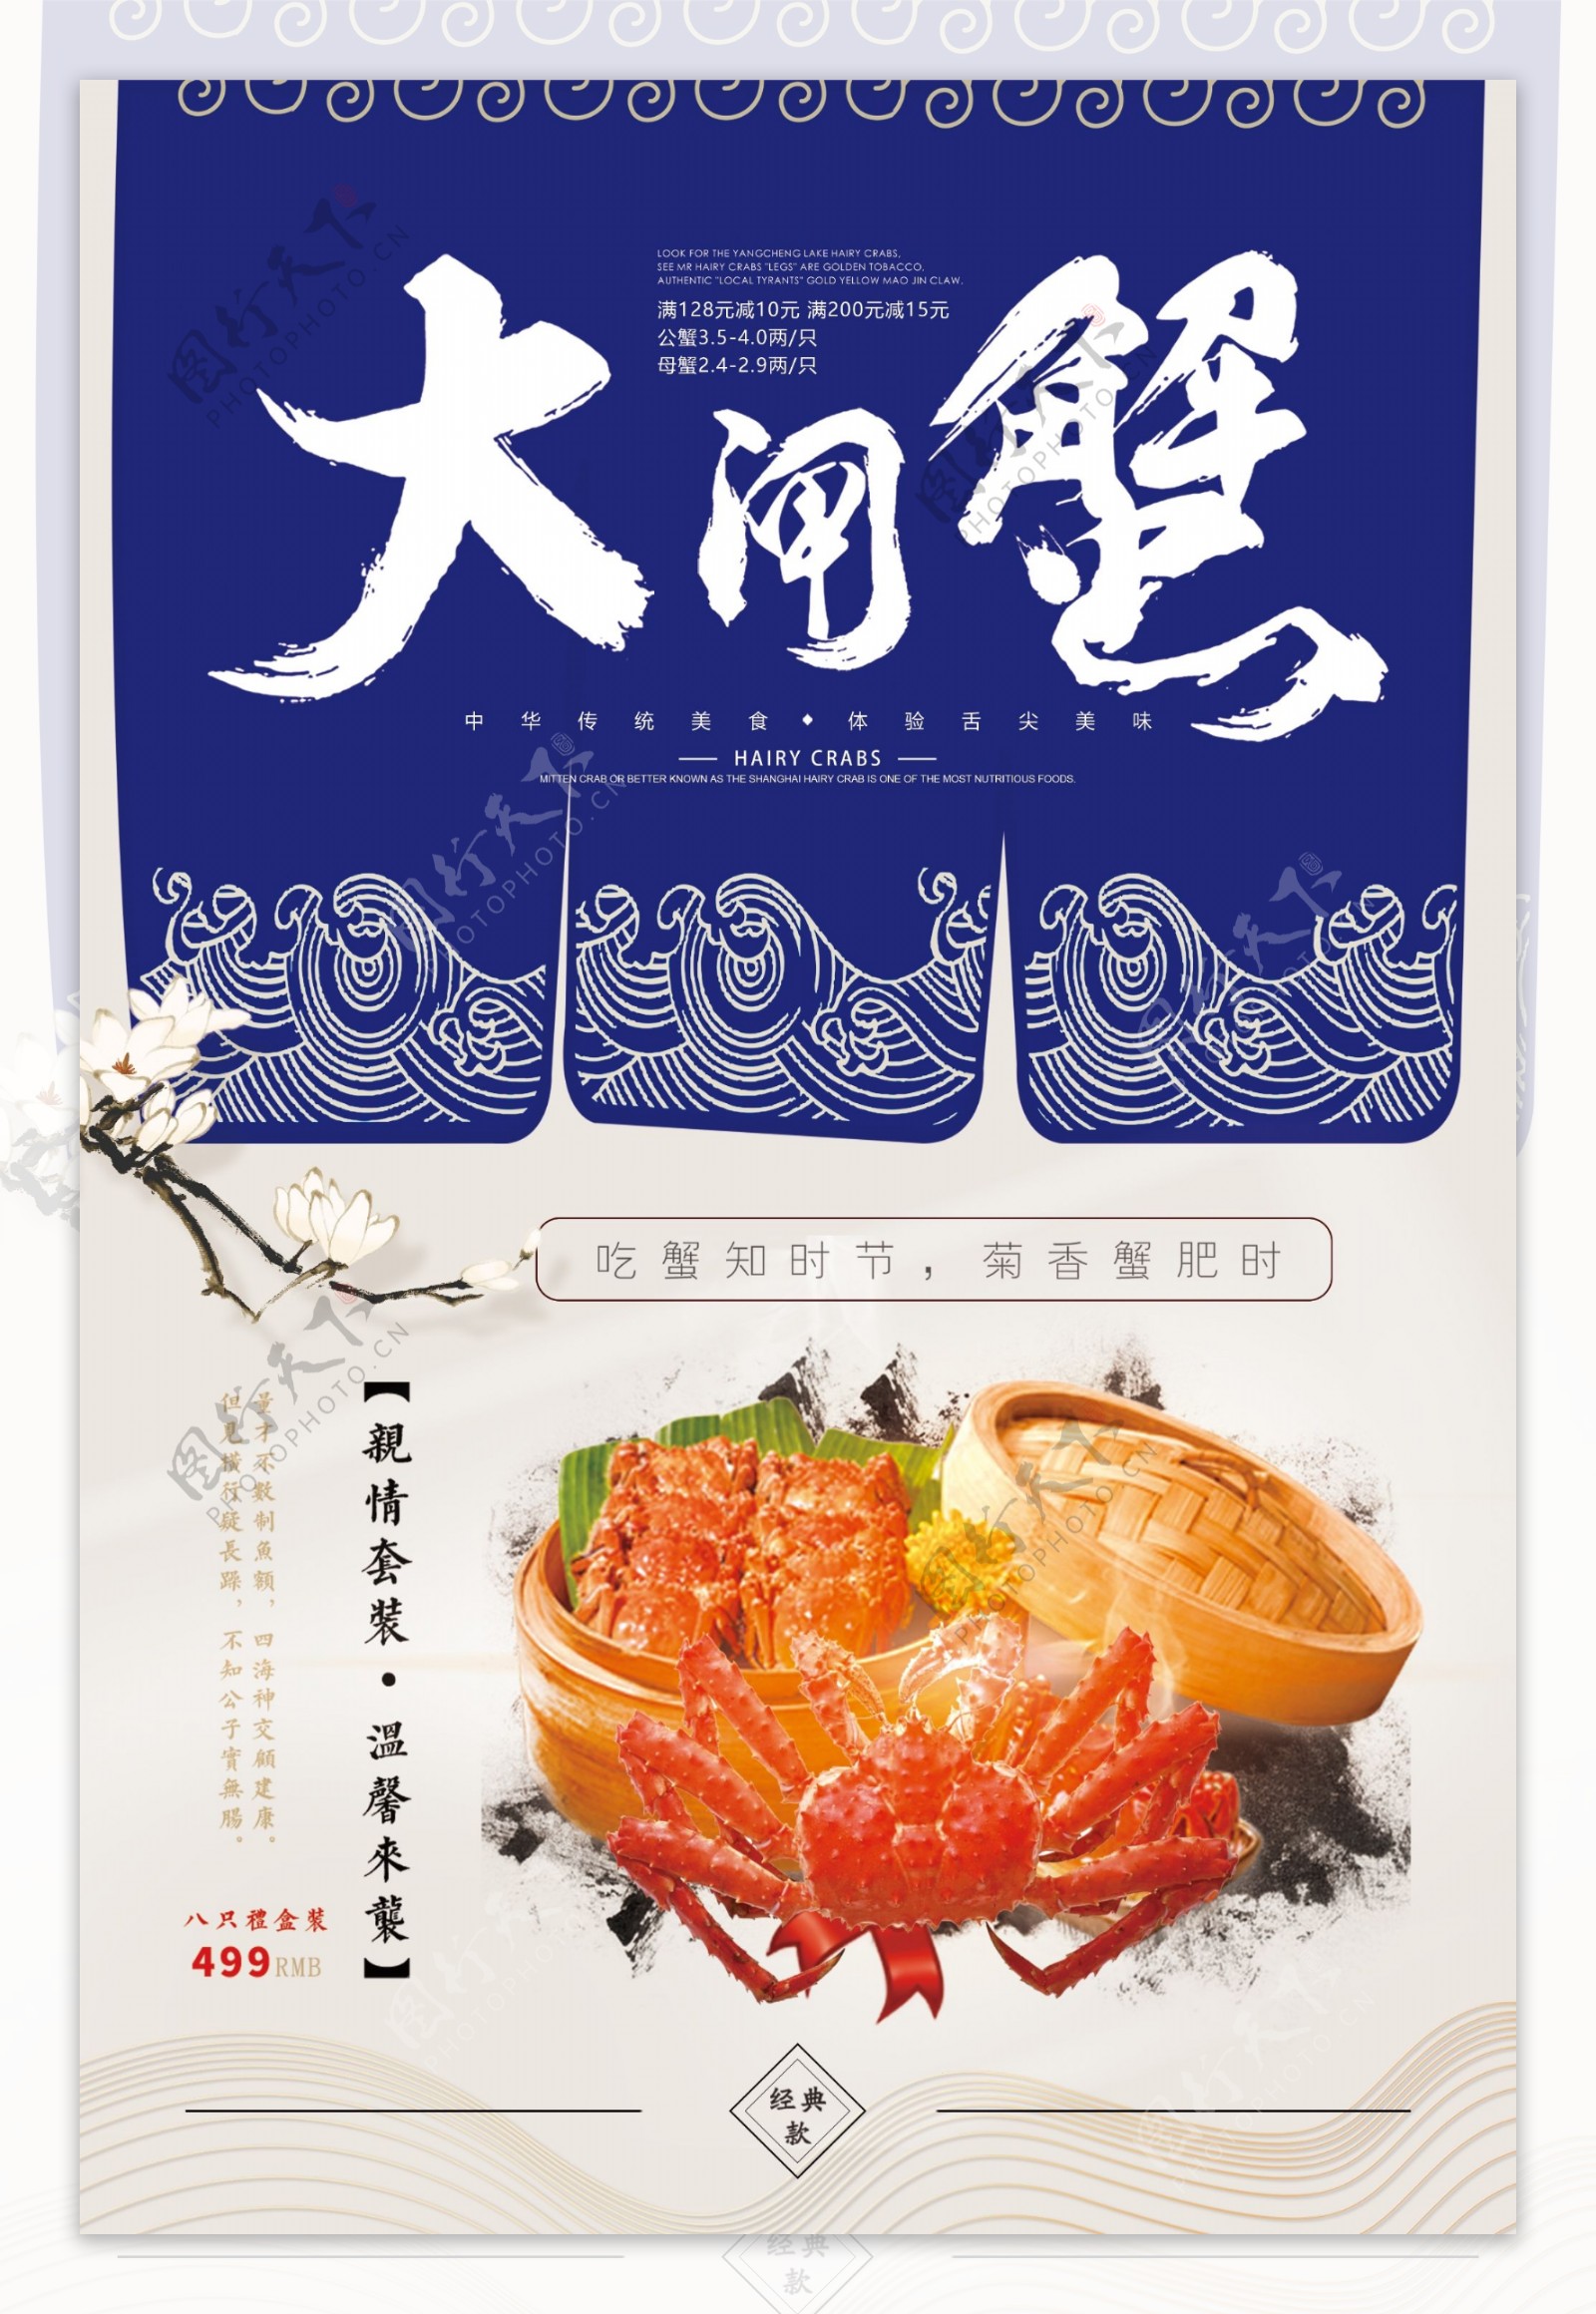 2018年蓝色中国风大气简洁大闸蟹餐饮海报